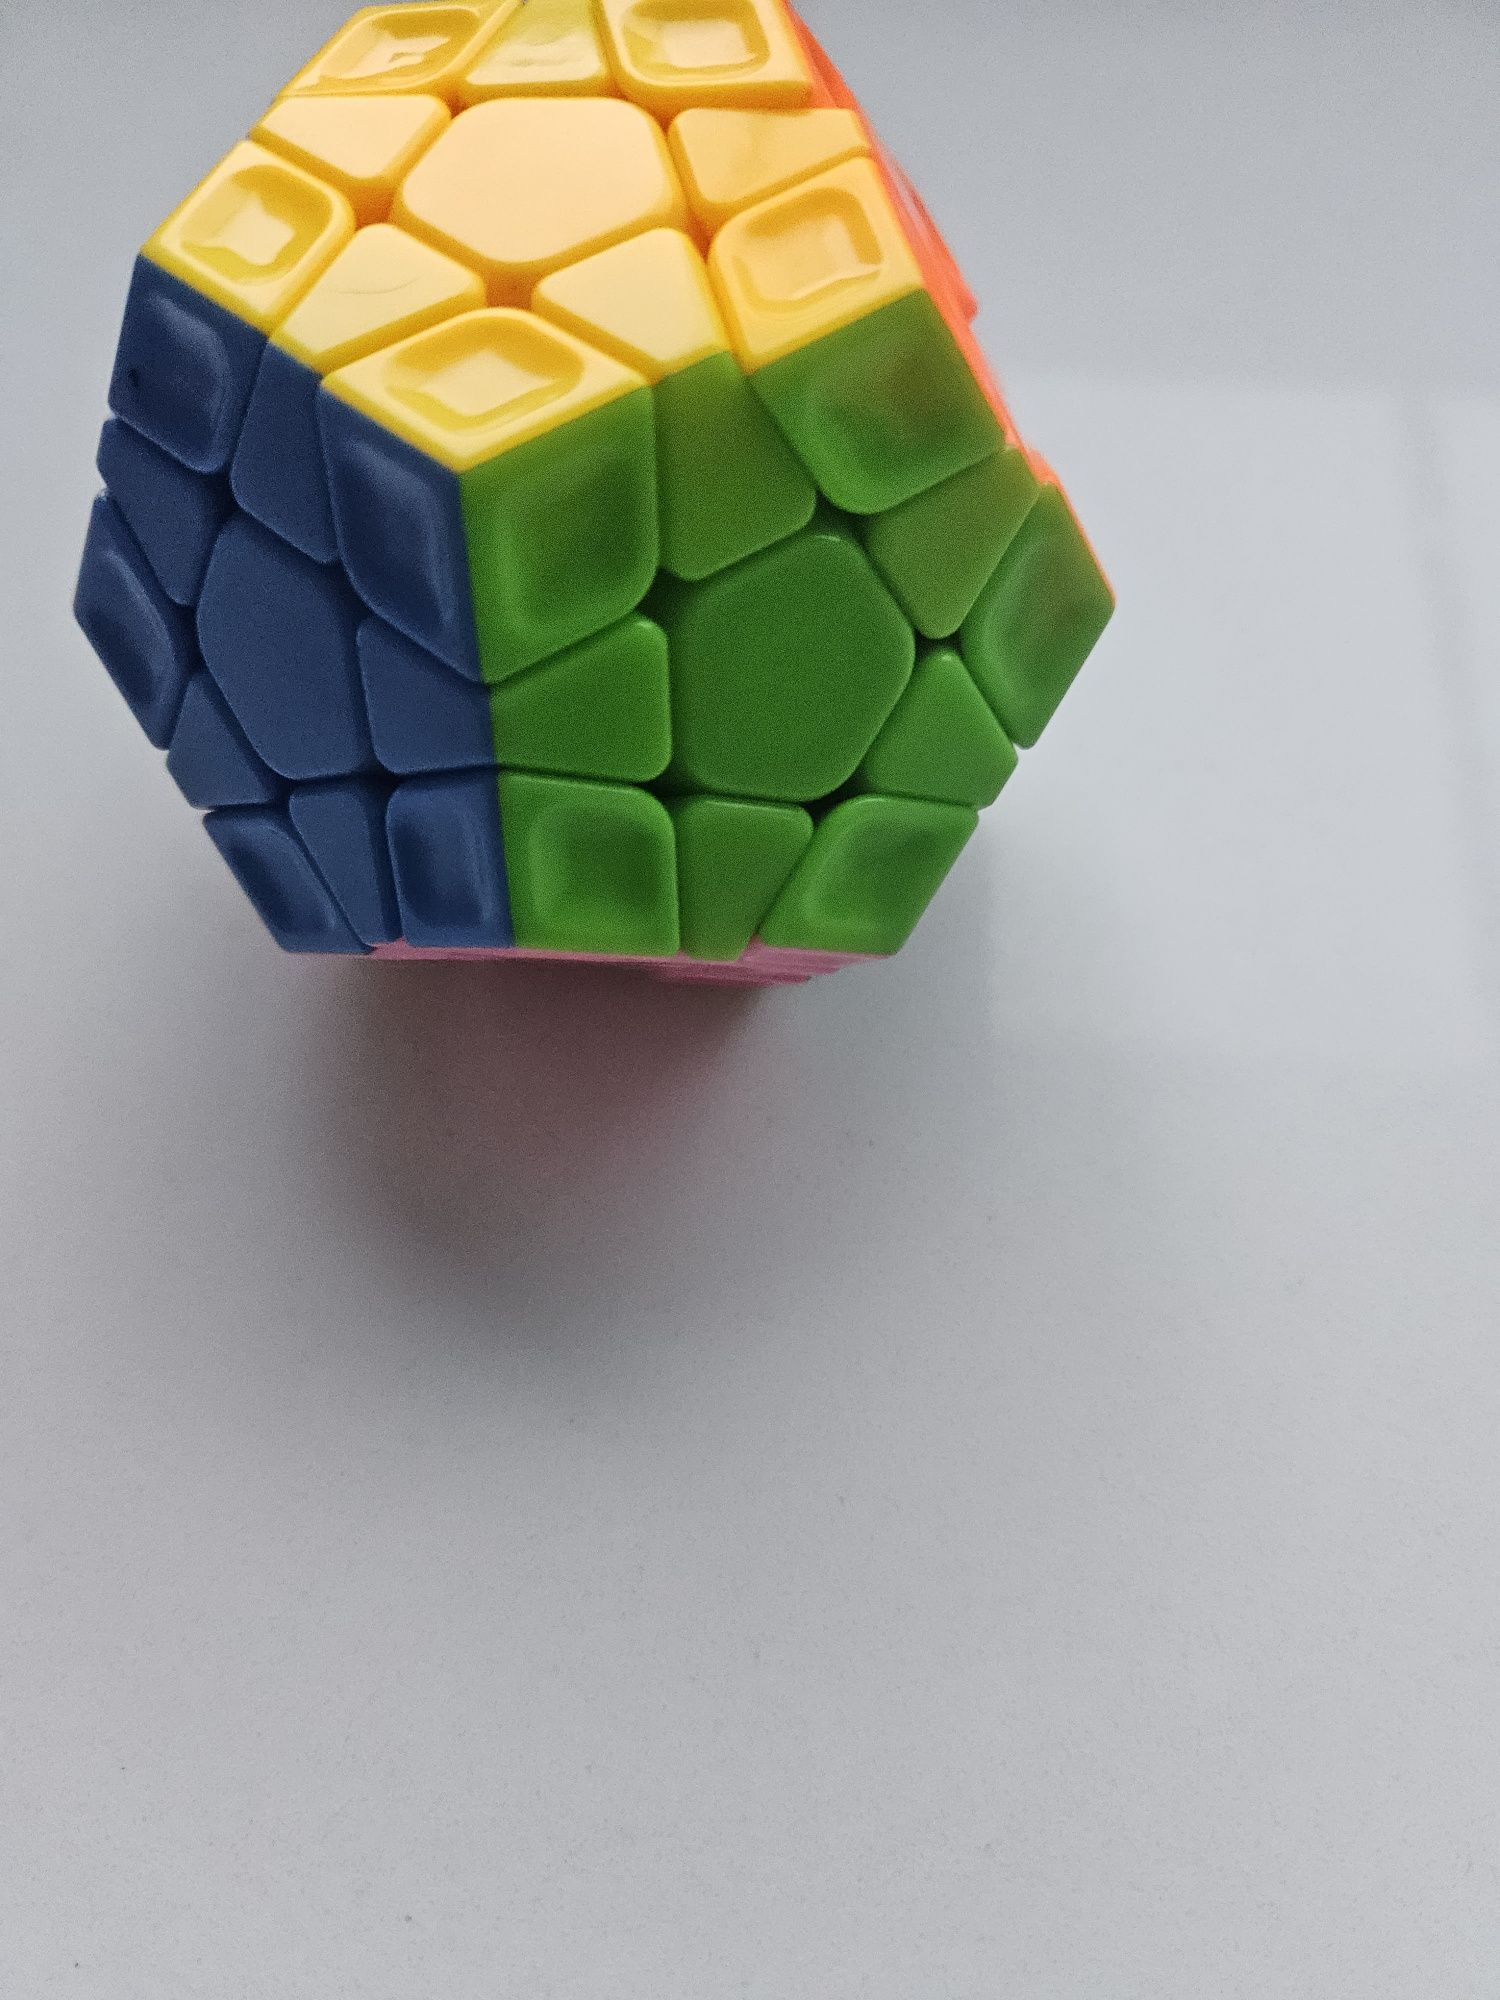 Cubo mágico megaminx